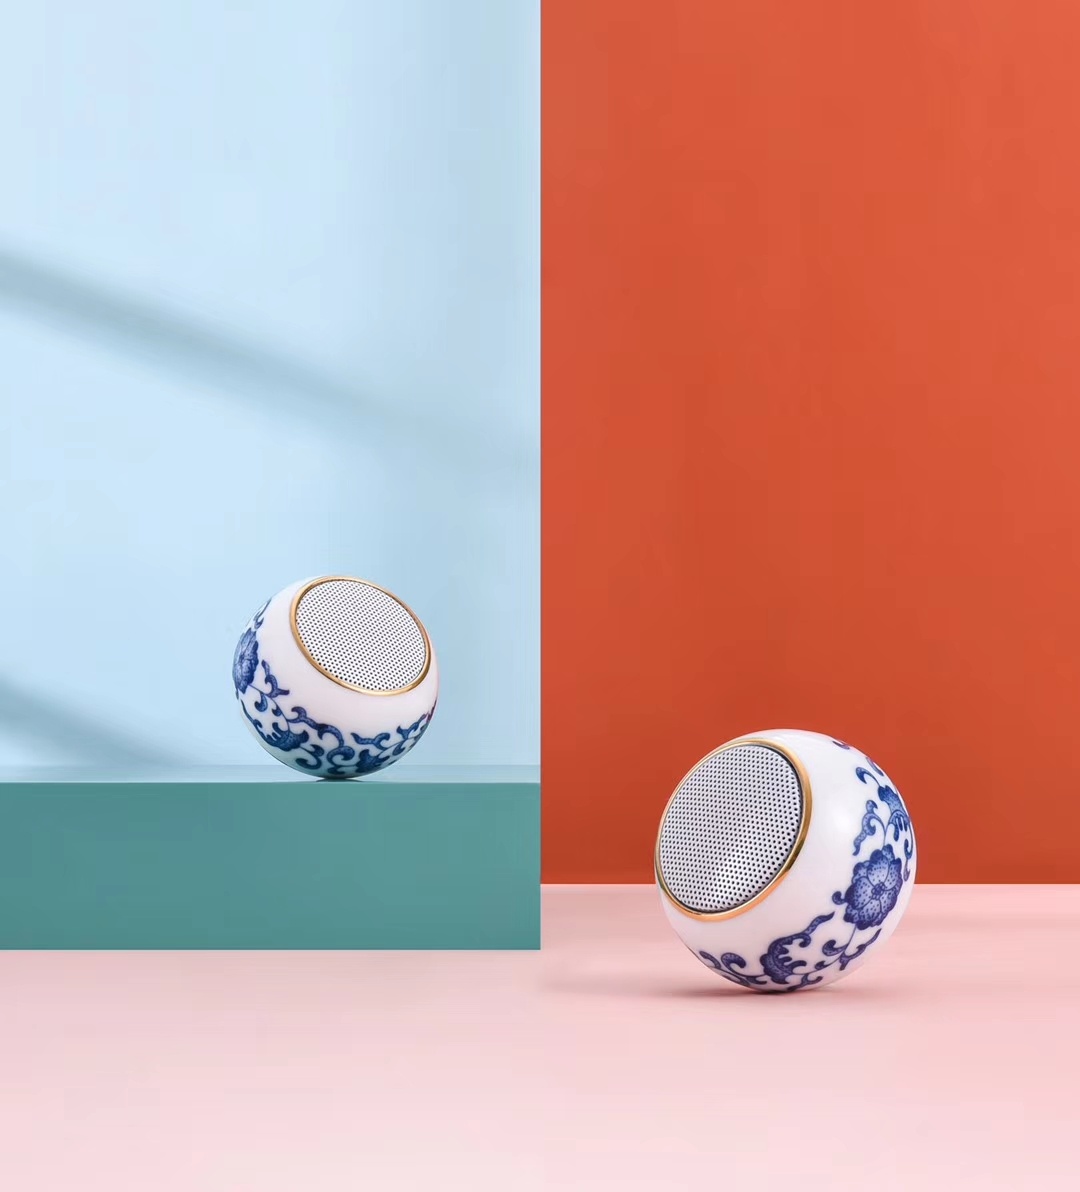 Jindezhen Ceramic Artistic Bluetooth Speaker